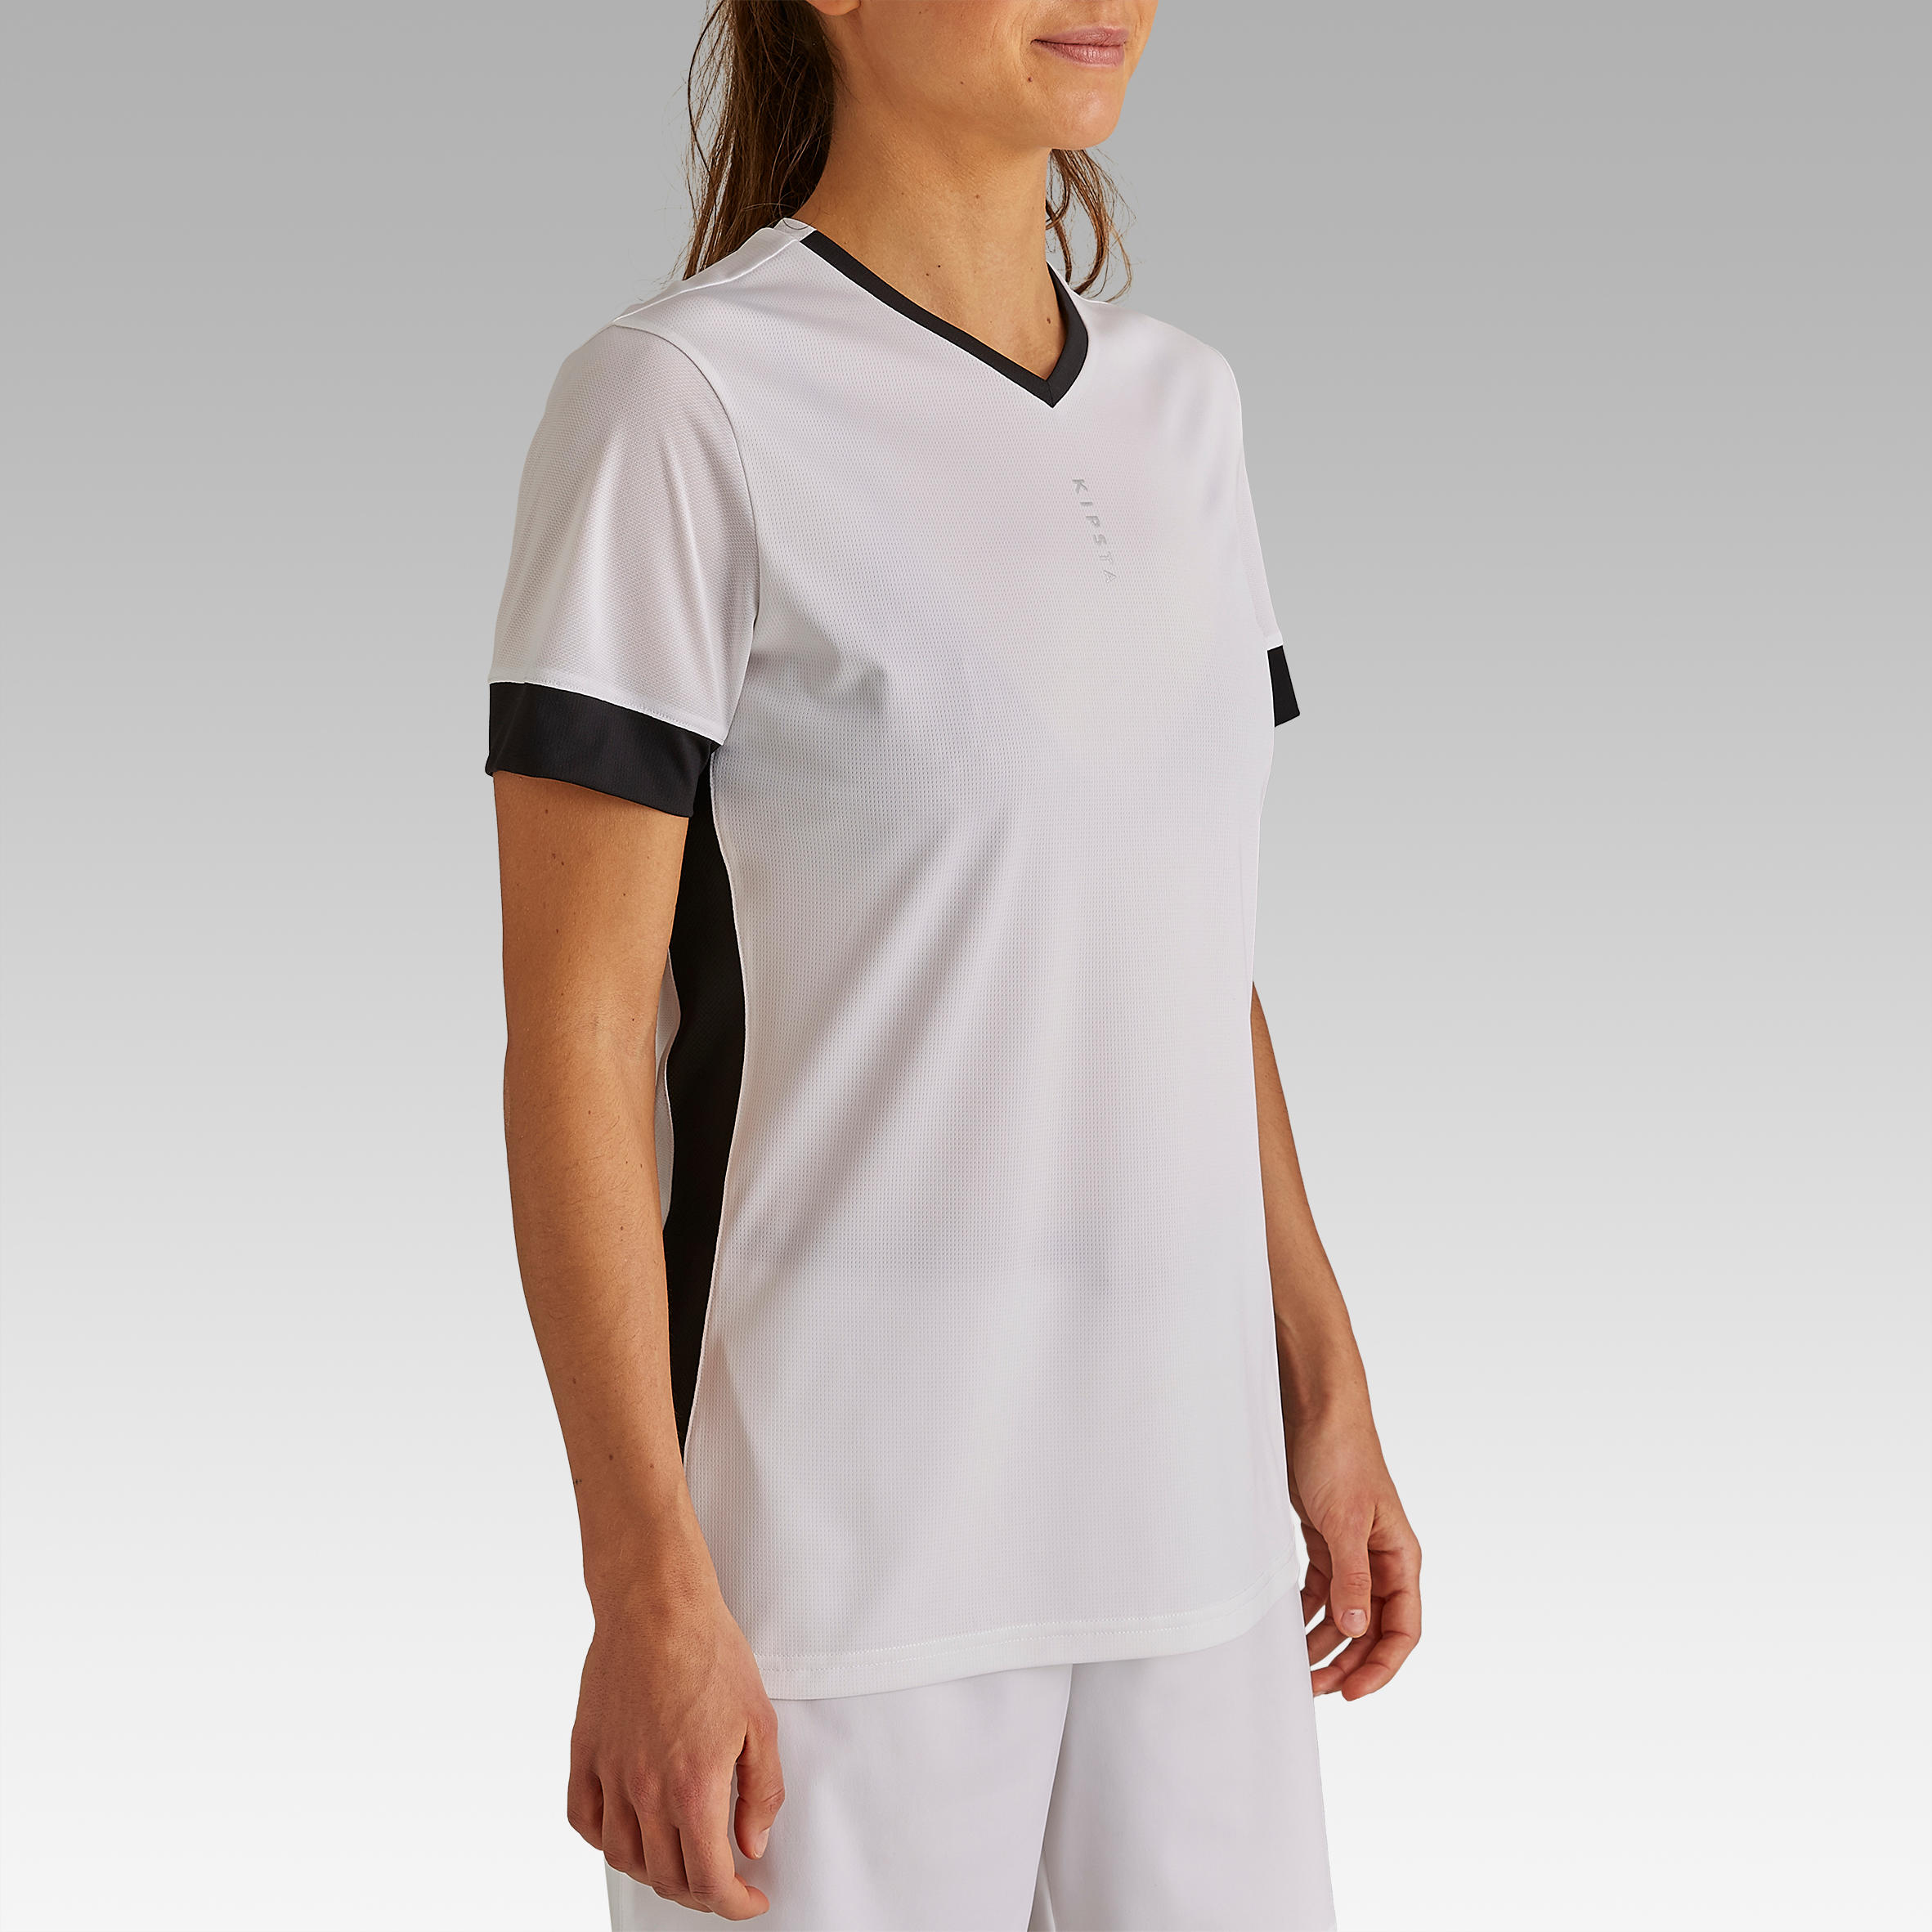 Camiseta de fútbol mujer F500 blanca negra